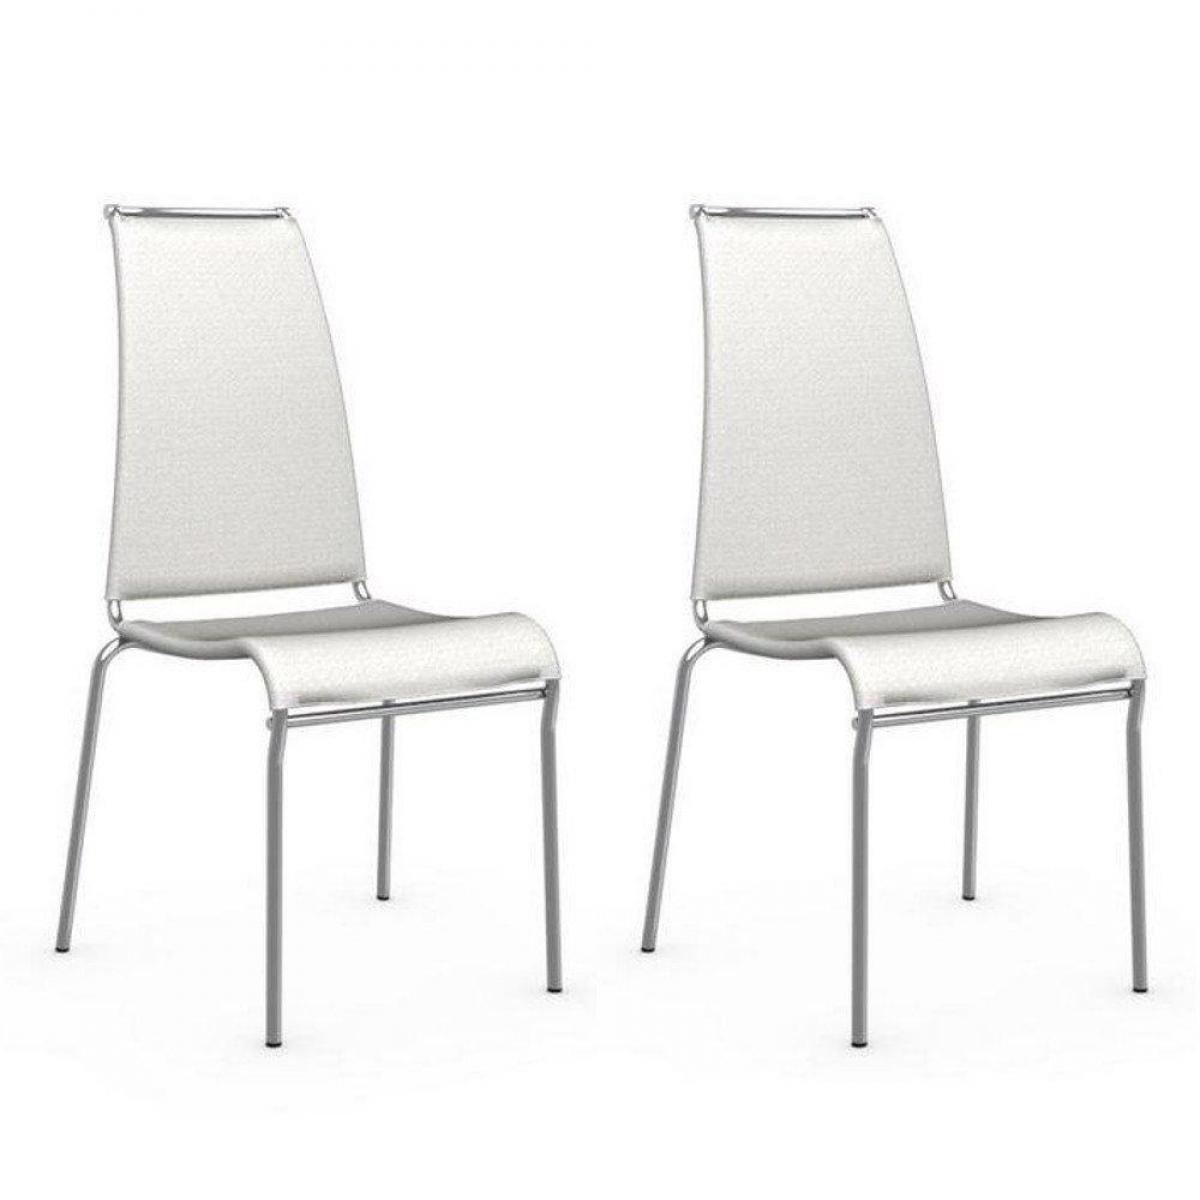 Inside 75 - Lot de 2 chaises italienne AIR HIGH structure acier chromé assise tissu blanc - Chaises